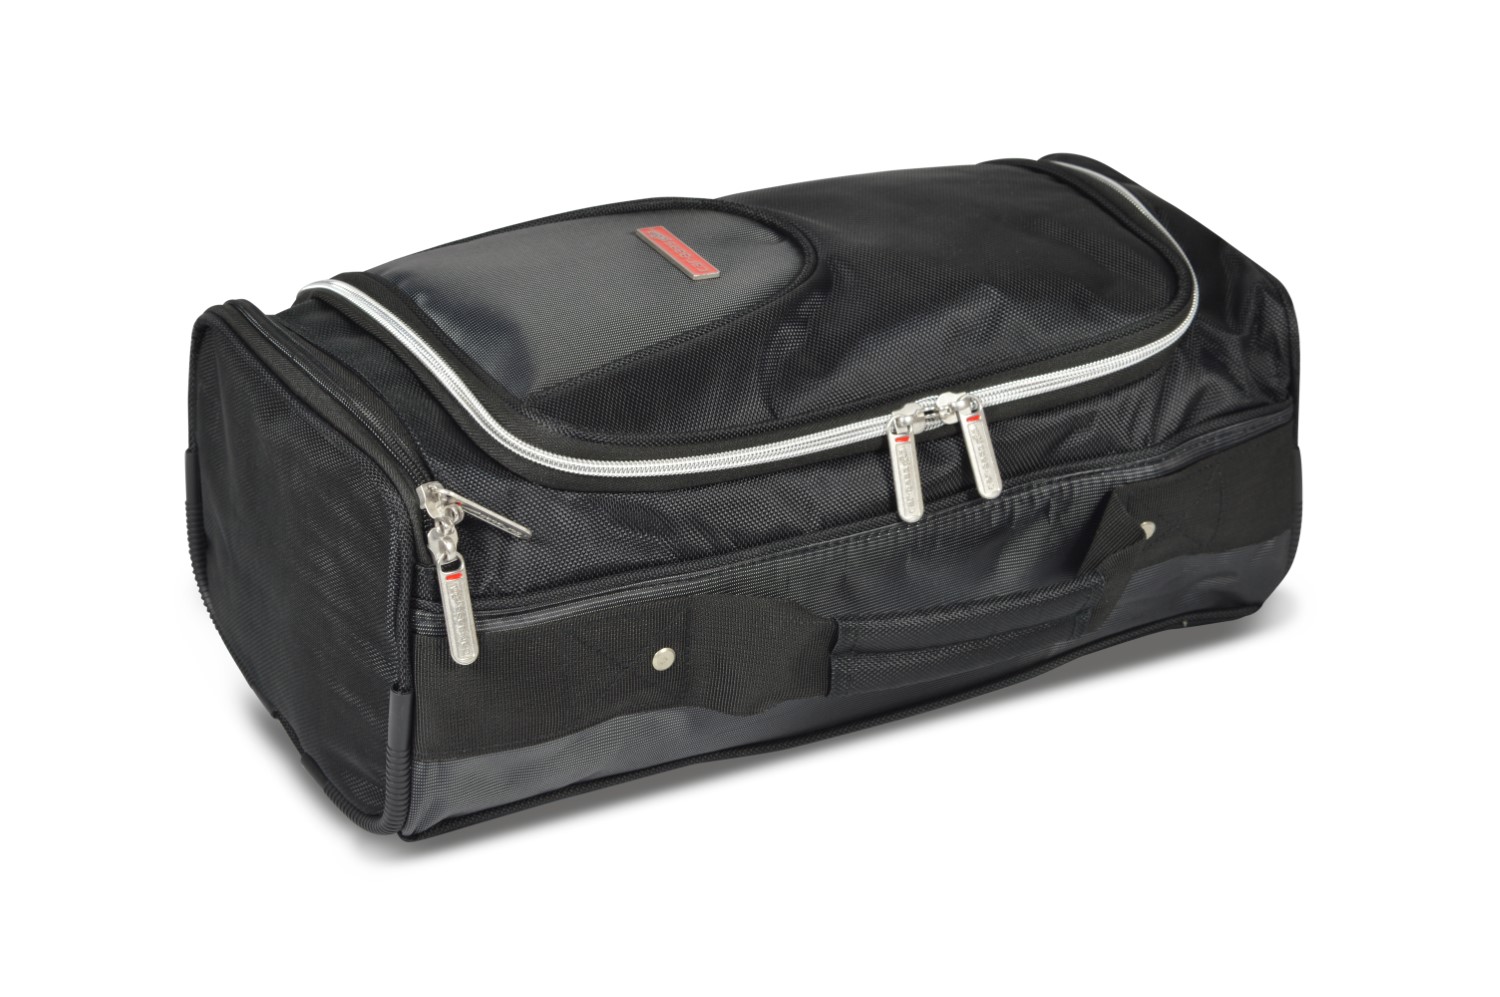 Travel bag - 20x15x42 cm (WxHxL)